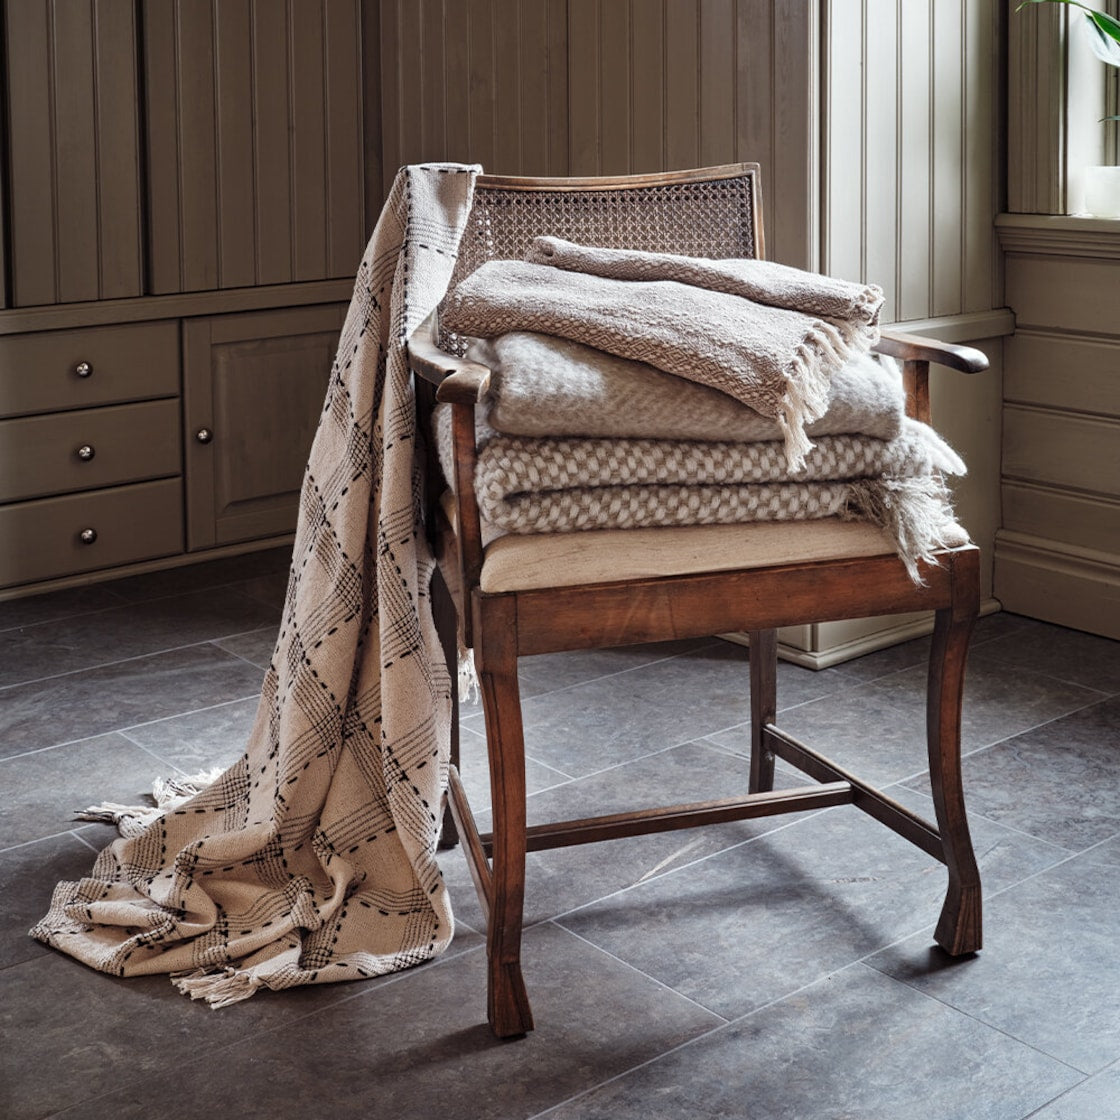 Plaid Tilde Blanket | Off-white